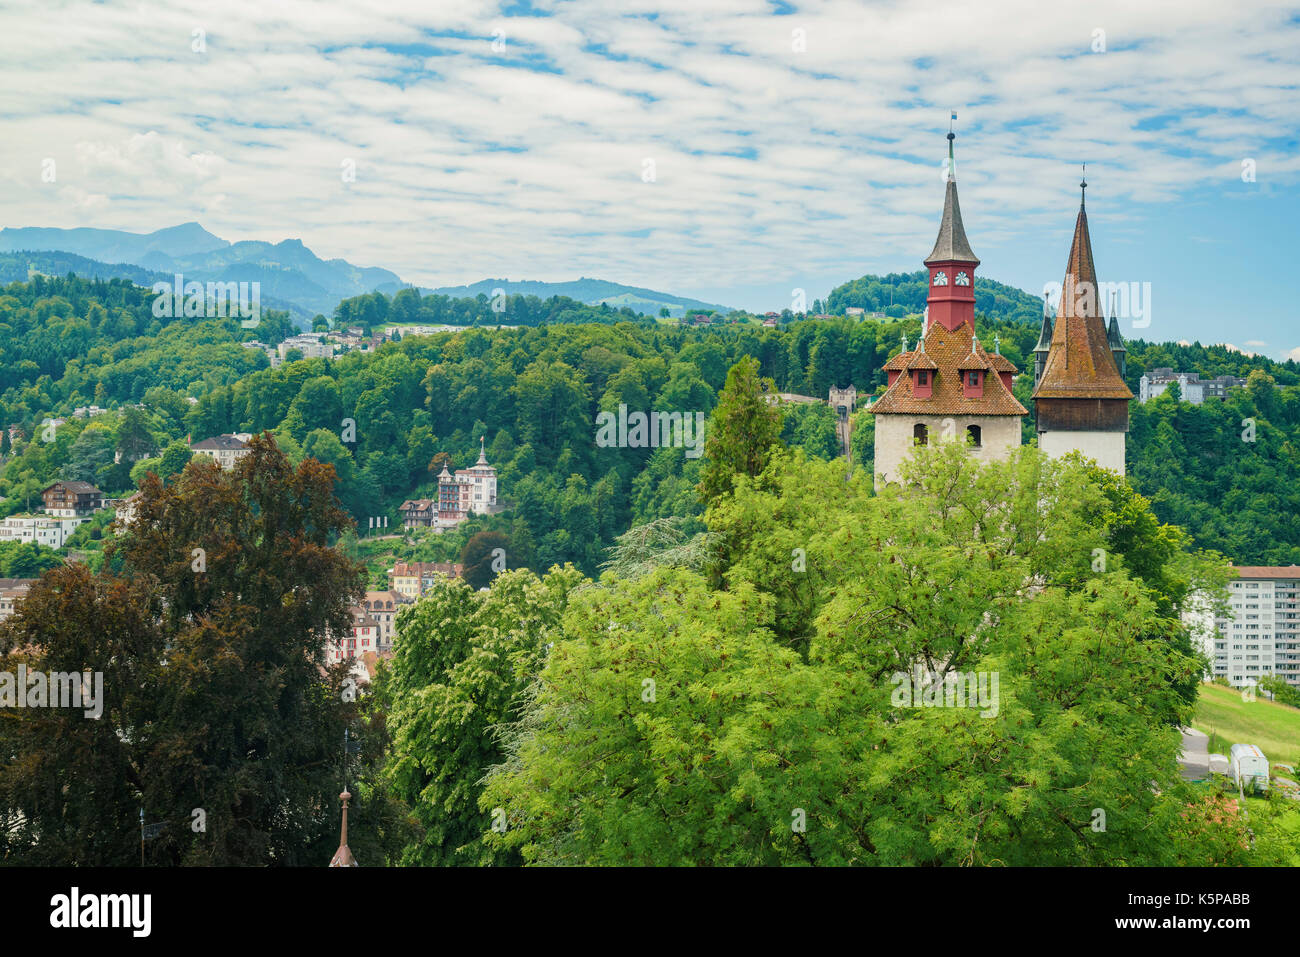 Die historische Luegislandturm und Wachturm Turm bei Luzern, Schweiz Stockfoto